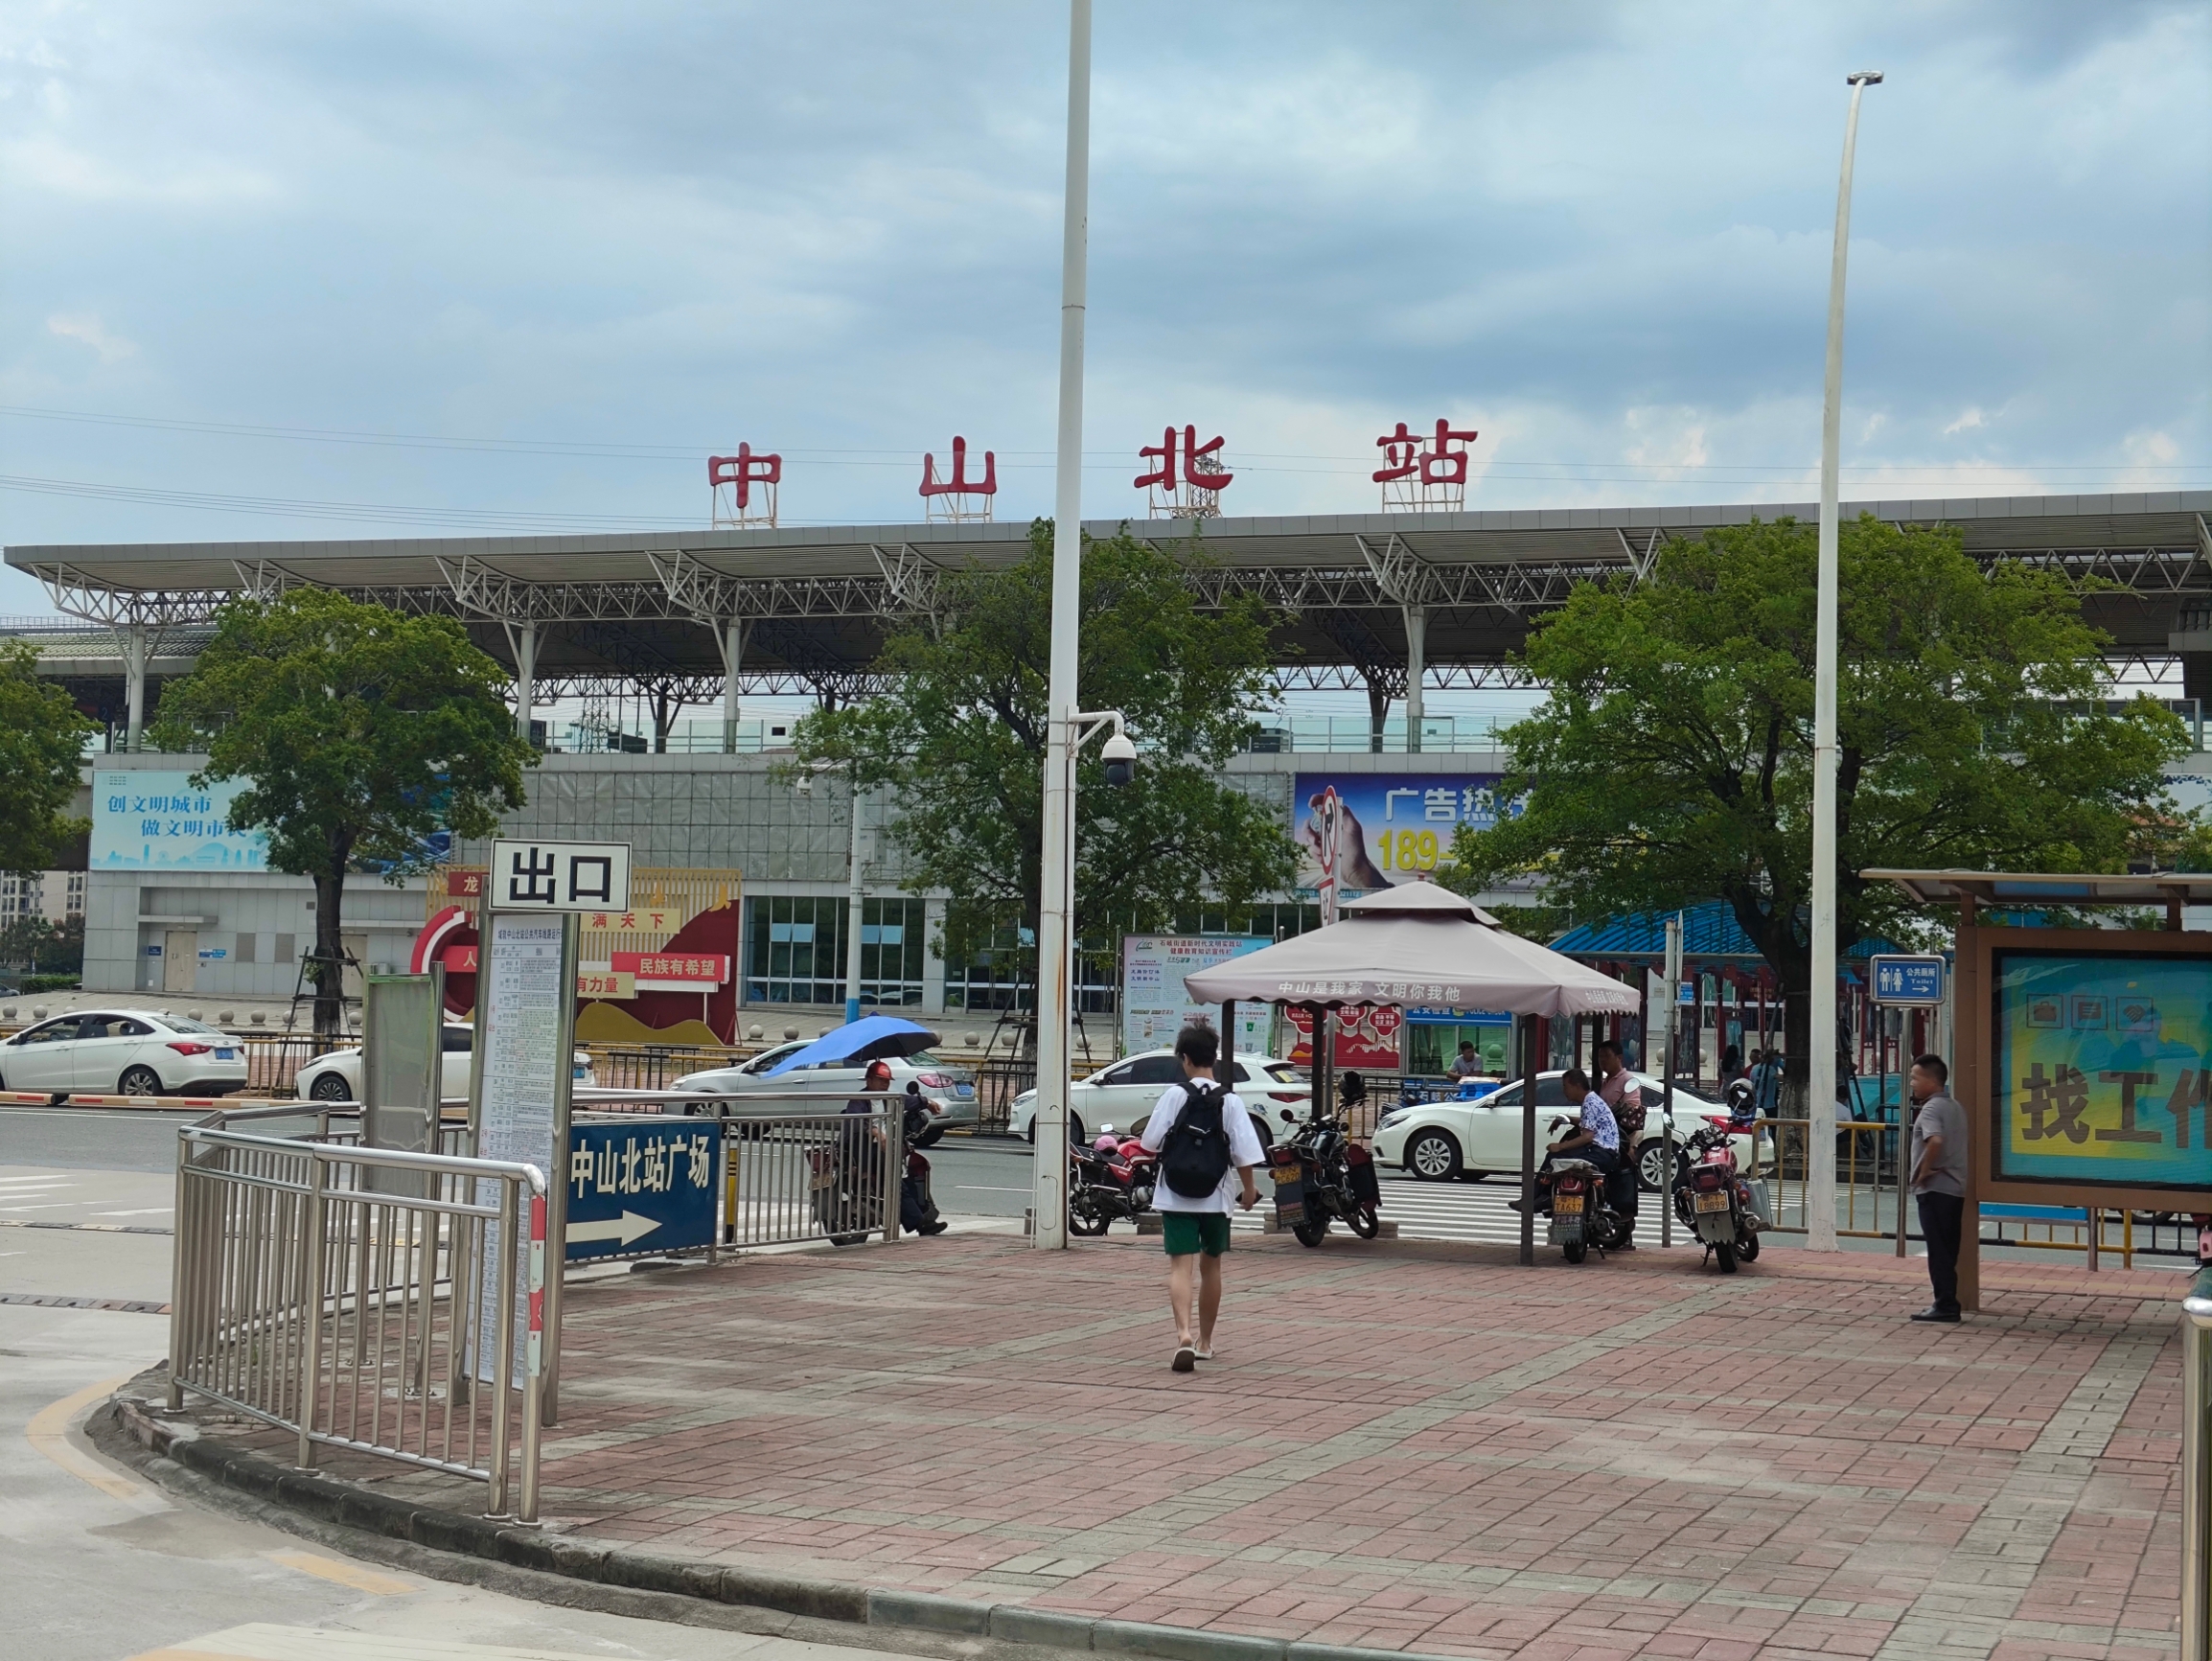 为参观孙中山先生故居纪念馆，专程从广州南站乘轻轨、坐公交，辗转一个半小时来到中山纪念馆前。时近中午，